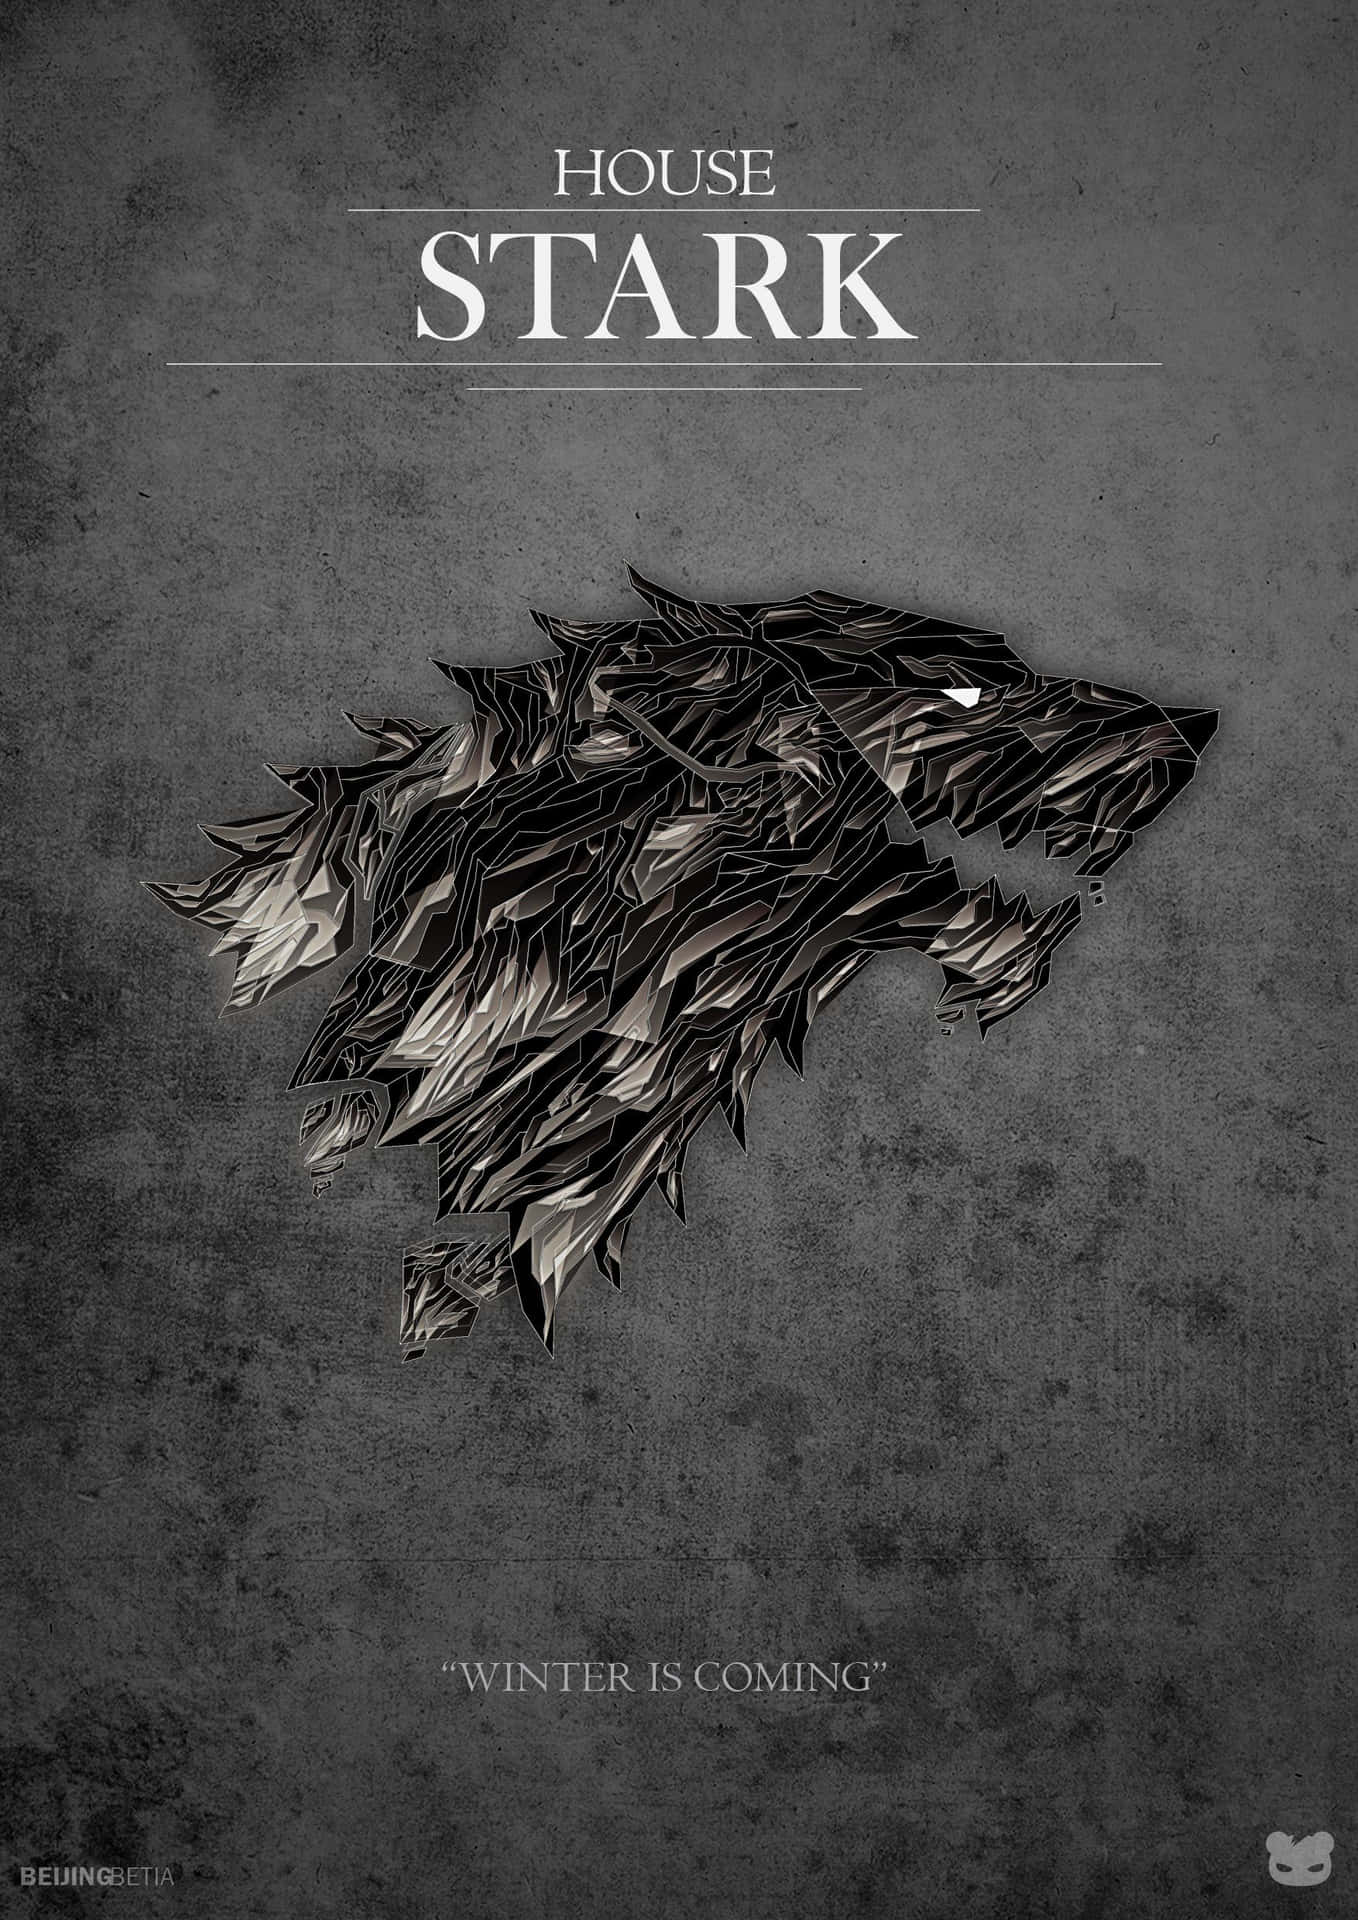 House Stark - Logo reveal by Videocomposer on DeviantArt